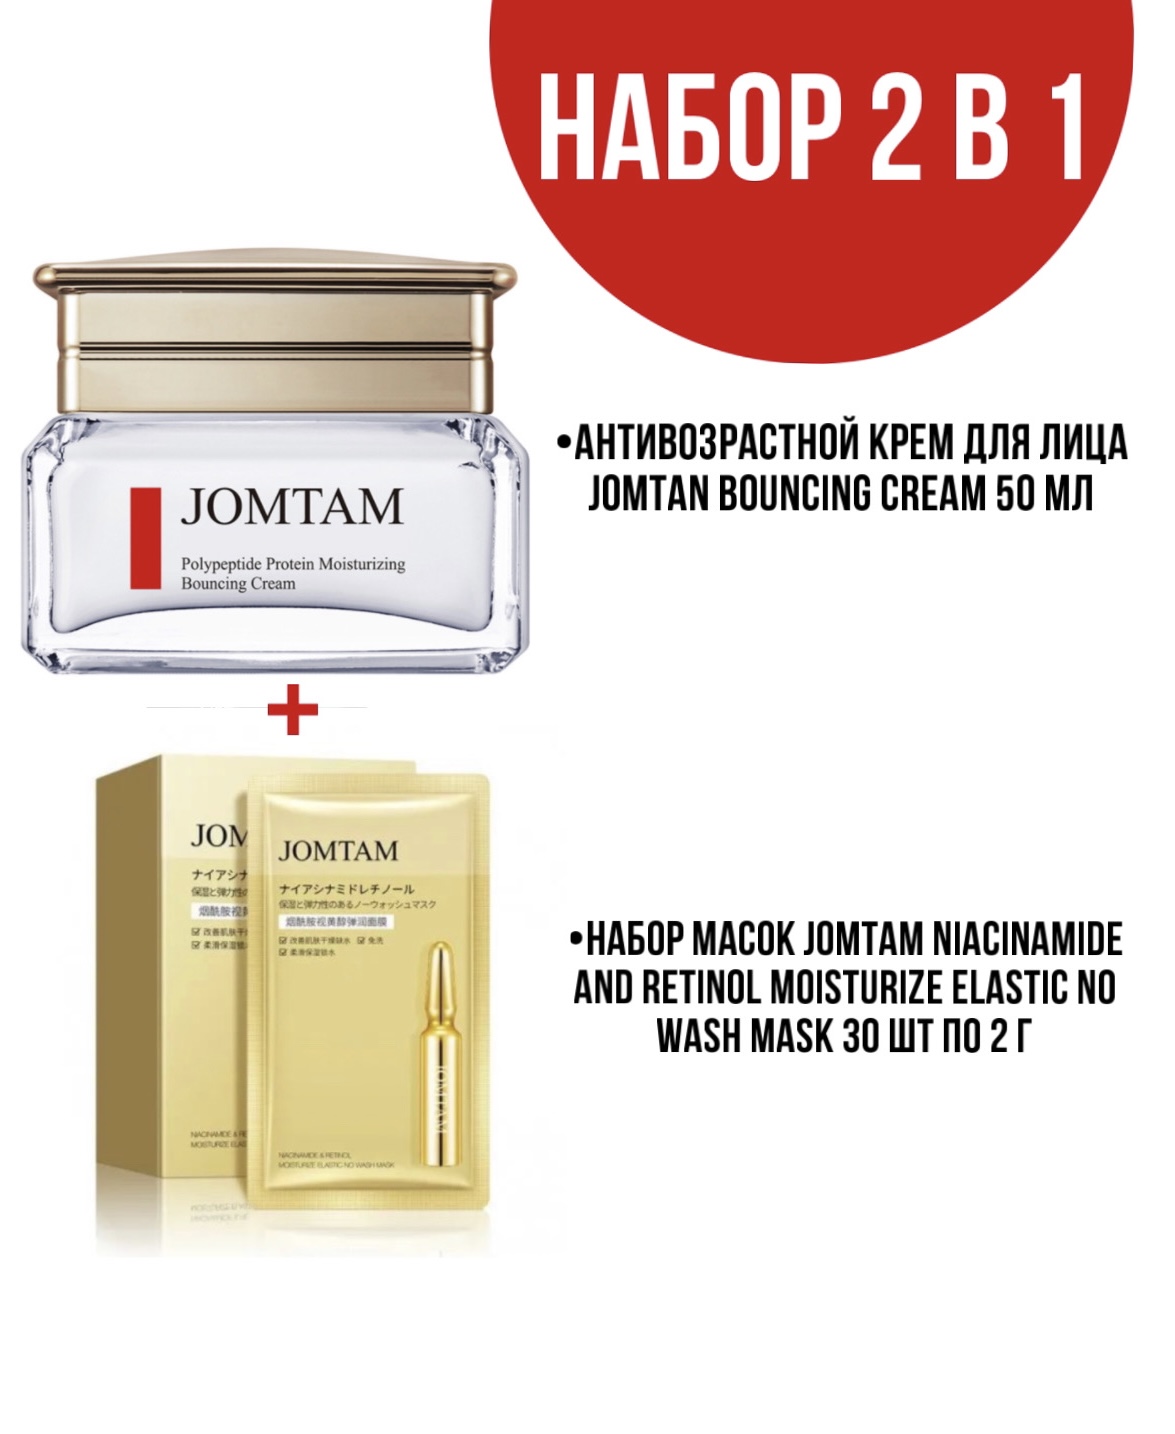 Крем Jomtam Bouncing Cream для лица 50 мл и набор масок Jomtam Niacinamide 30 шт по 2 г следы встречи двух музыкальных цивилизаций